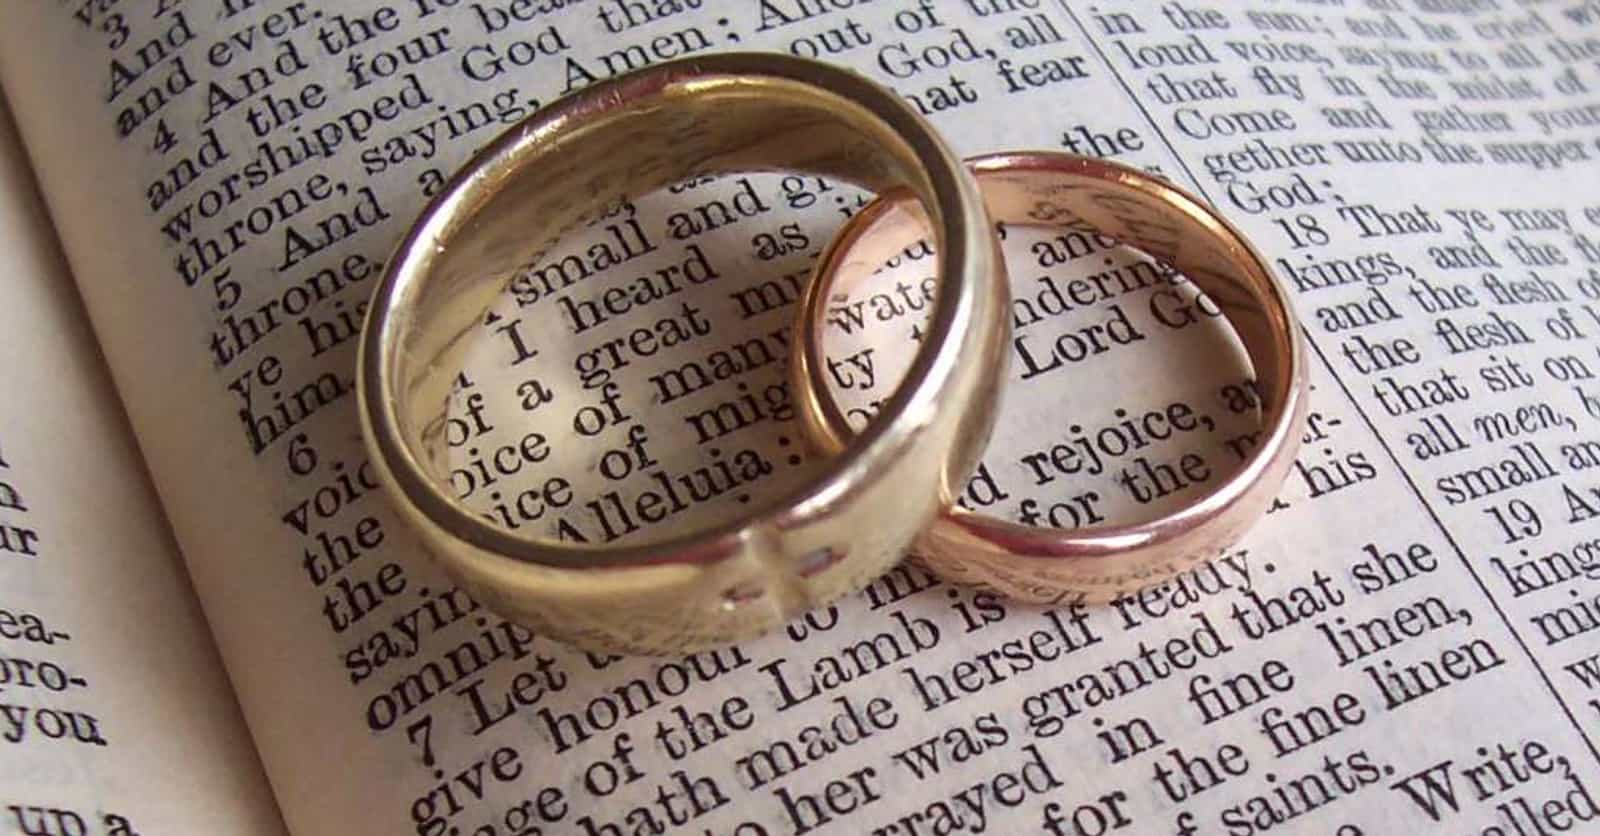 The Best Wedding Bible Verses